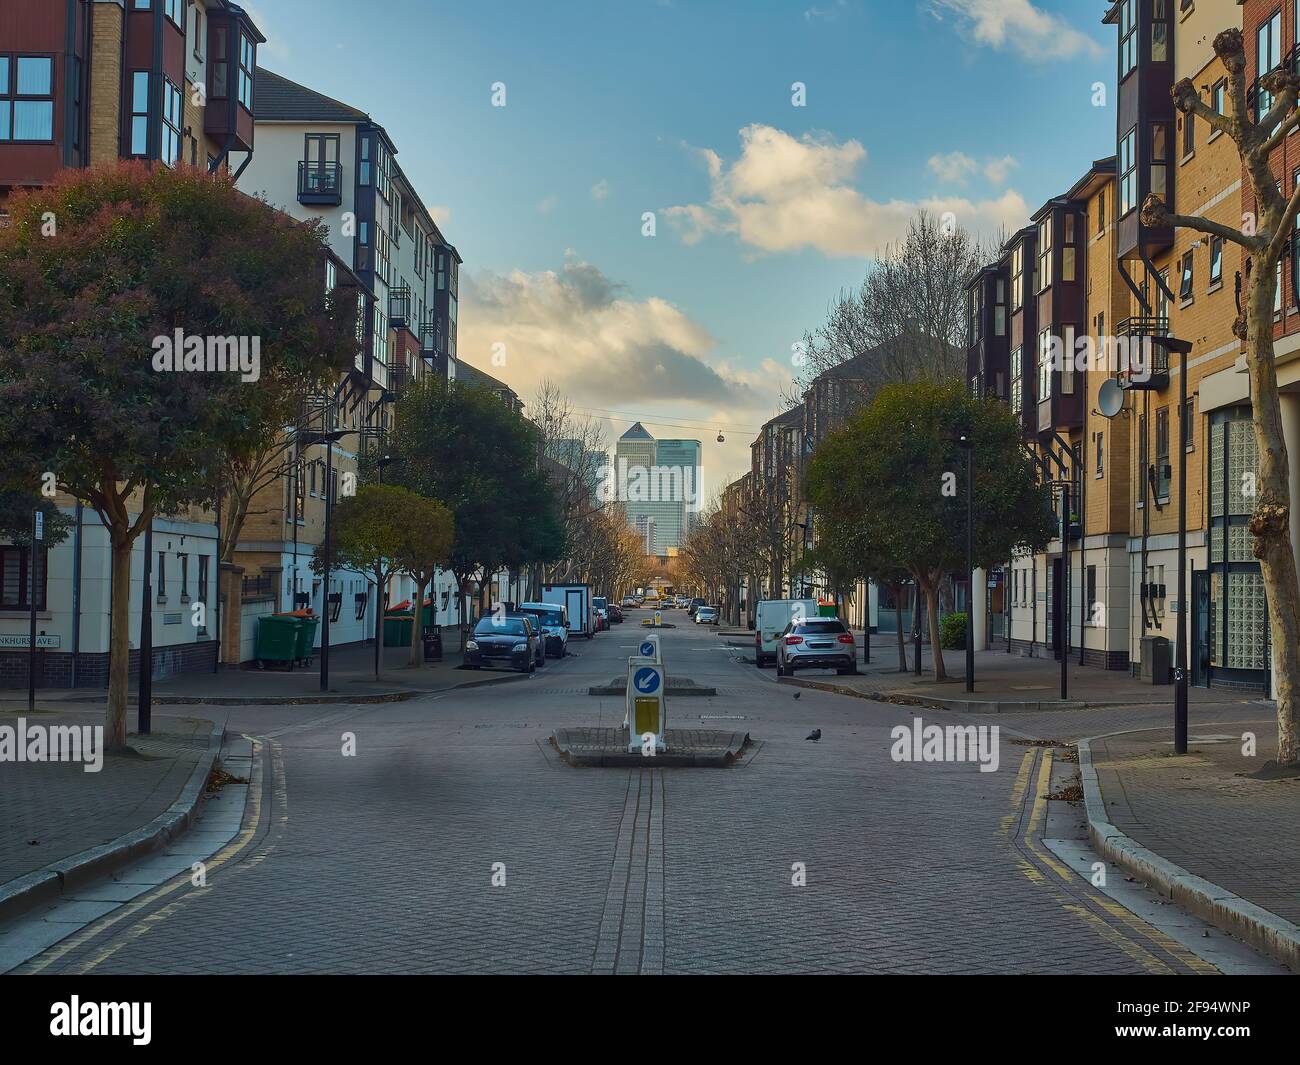 London UK Dez 2019- EINE Wohnstraße, Häuser, Autos und Bäume, die zu einem von Dunst umhüllten Canary Wharf hindurchblicken, der sich wie eine Fata Morgana am Horizont erhebt Stockfoto